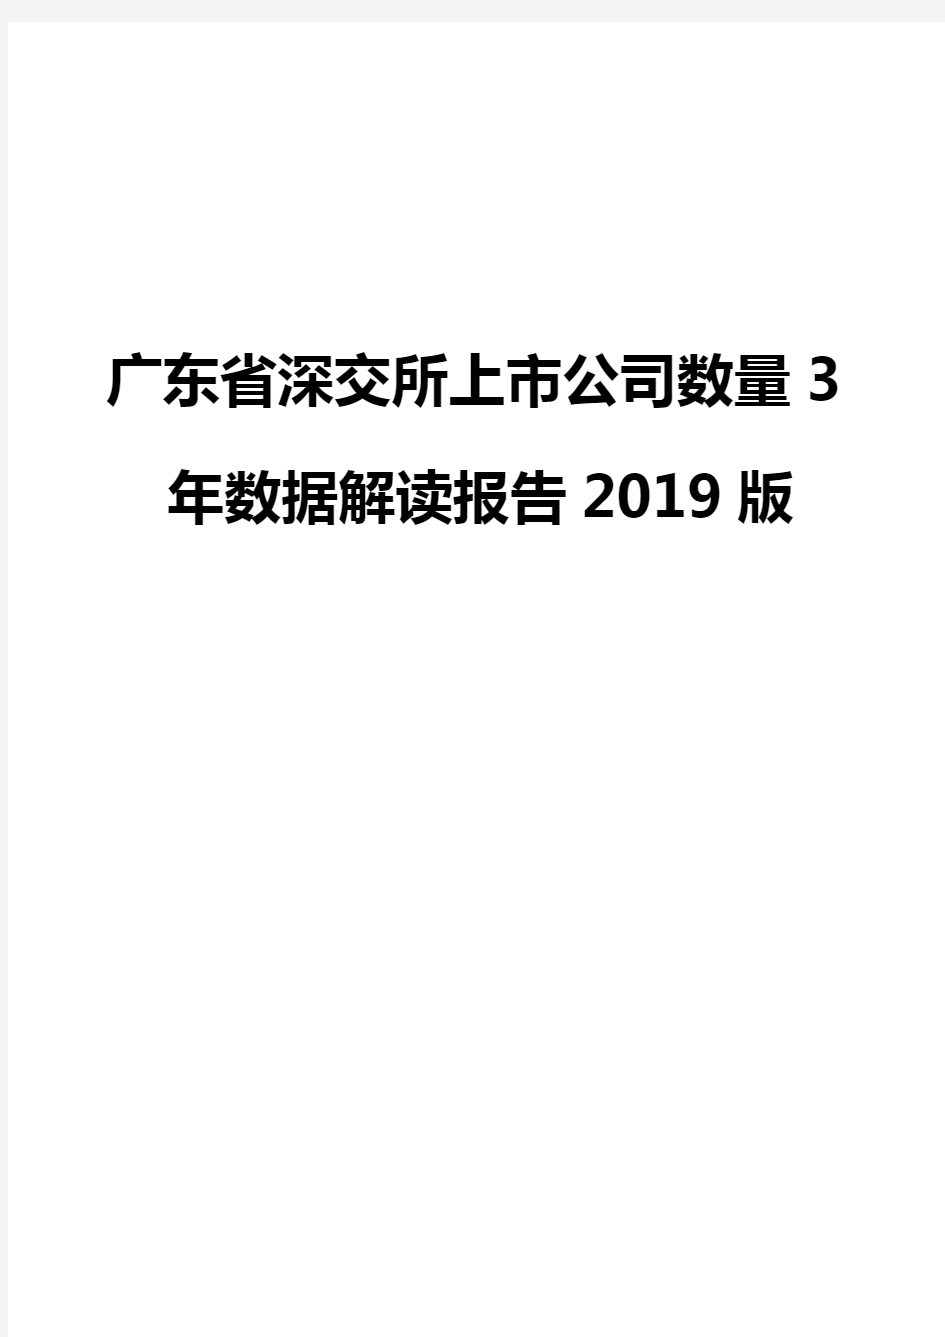 广东省深交所上市公司数量3年数据解读报告2019版